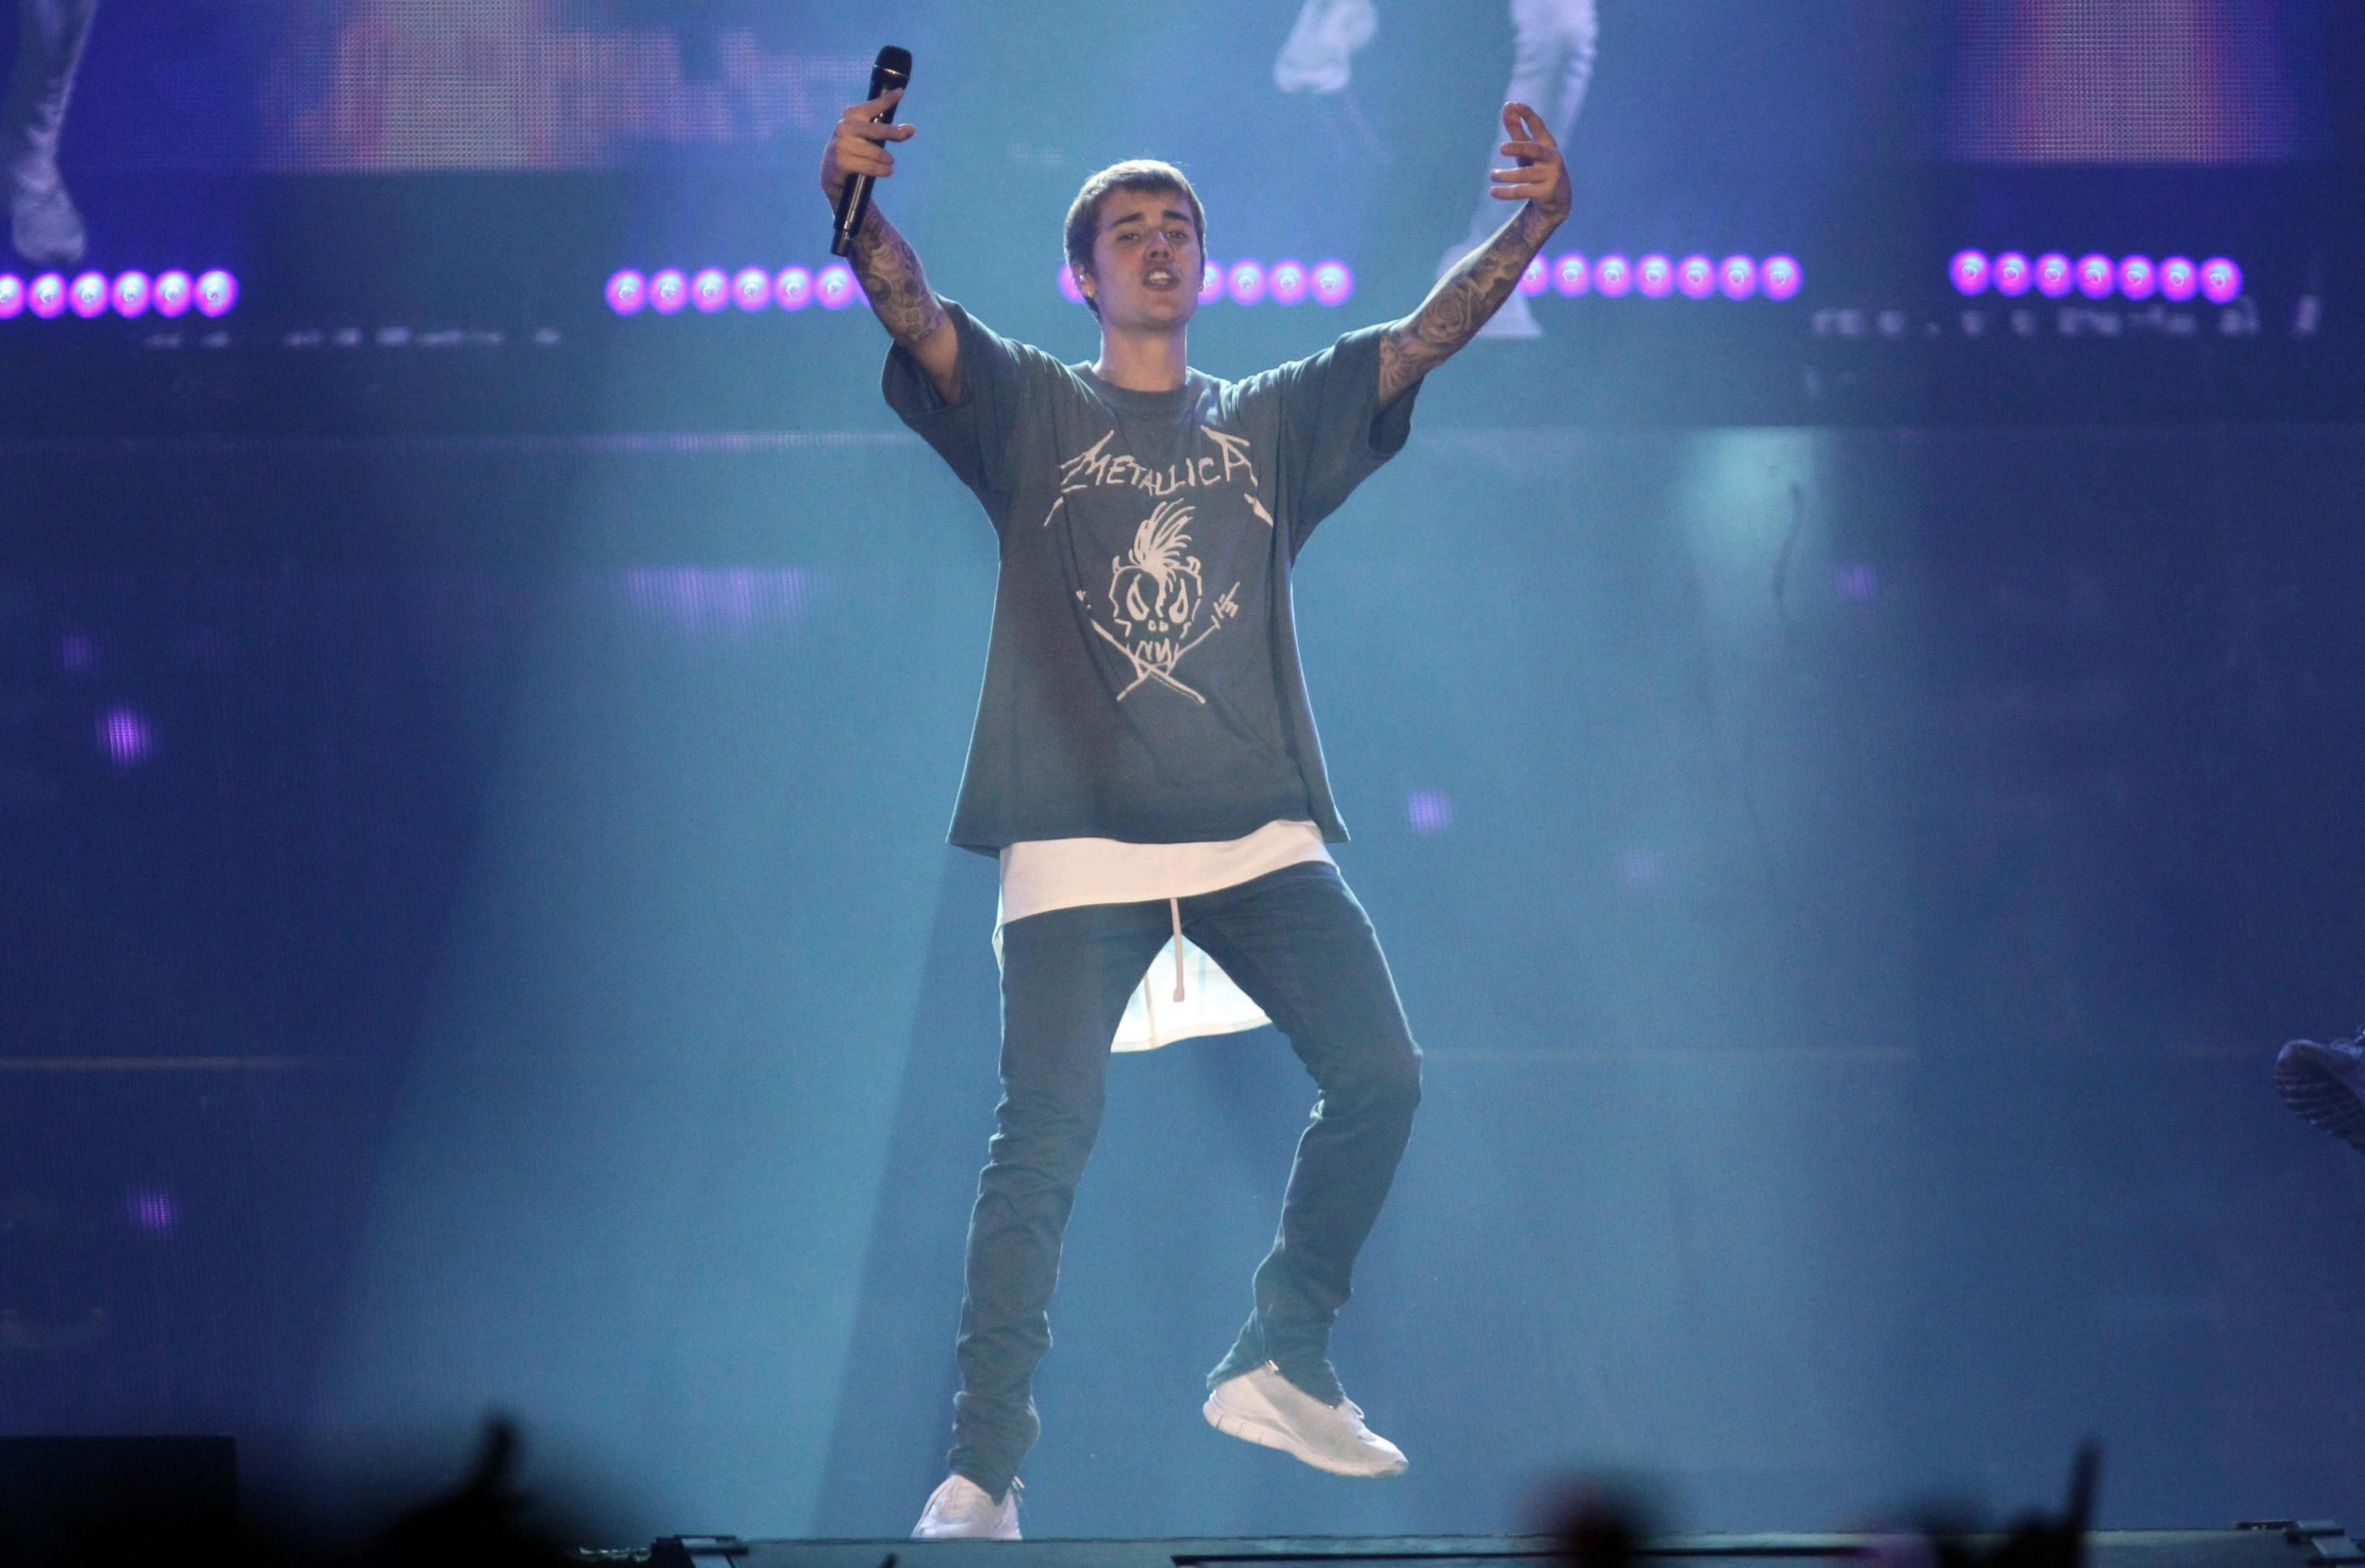 Justin Bieber en una imagen de archivo durante una actuación. EFE/EPA/GIORGIO BENVENUTI
